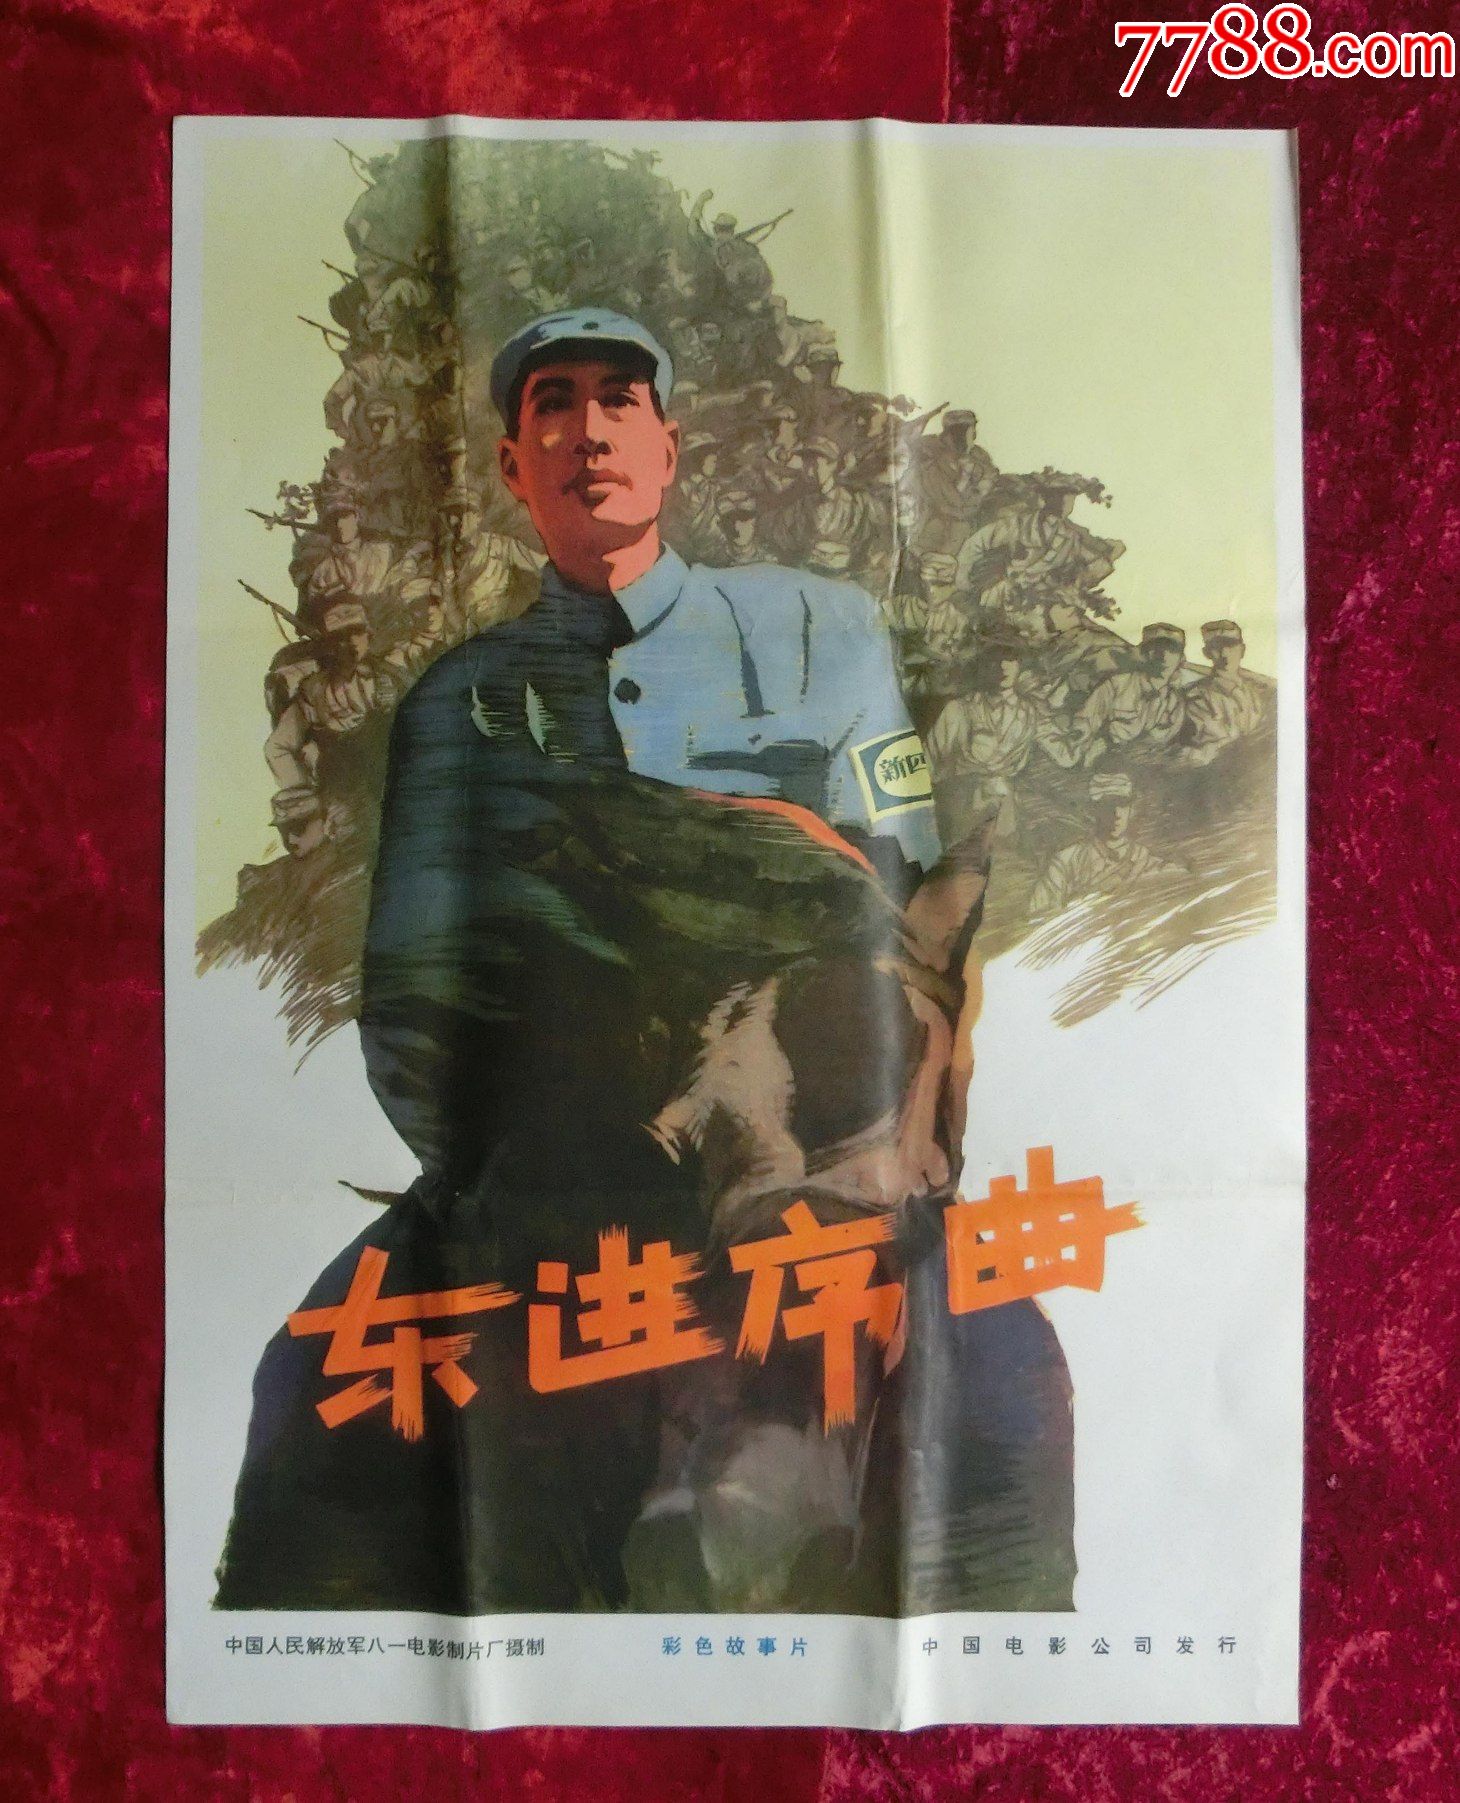 2开电影海报:东进序曲(1962年)抗战专题